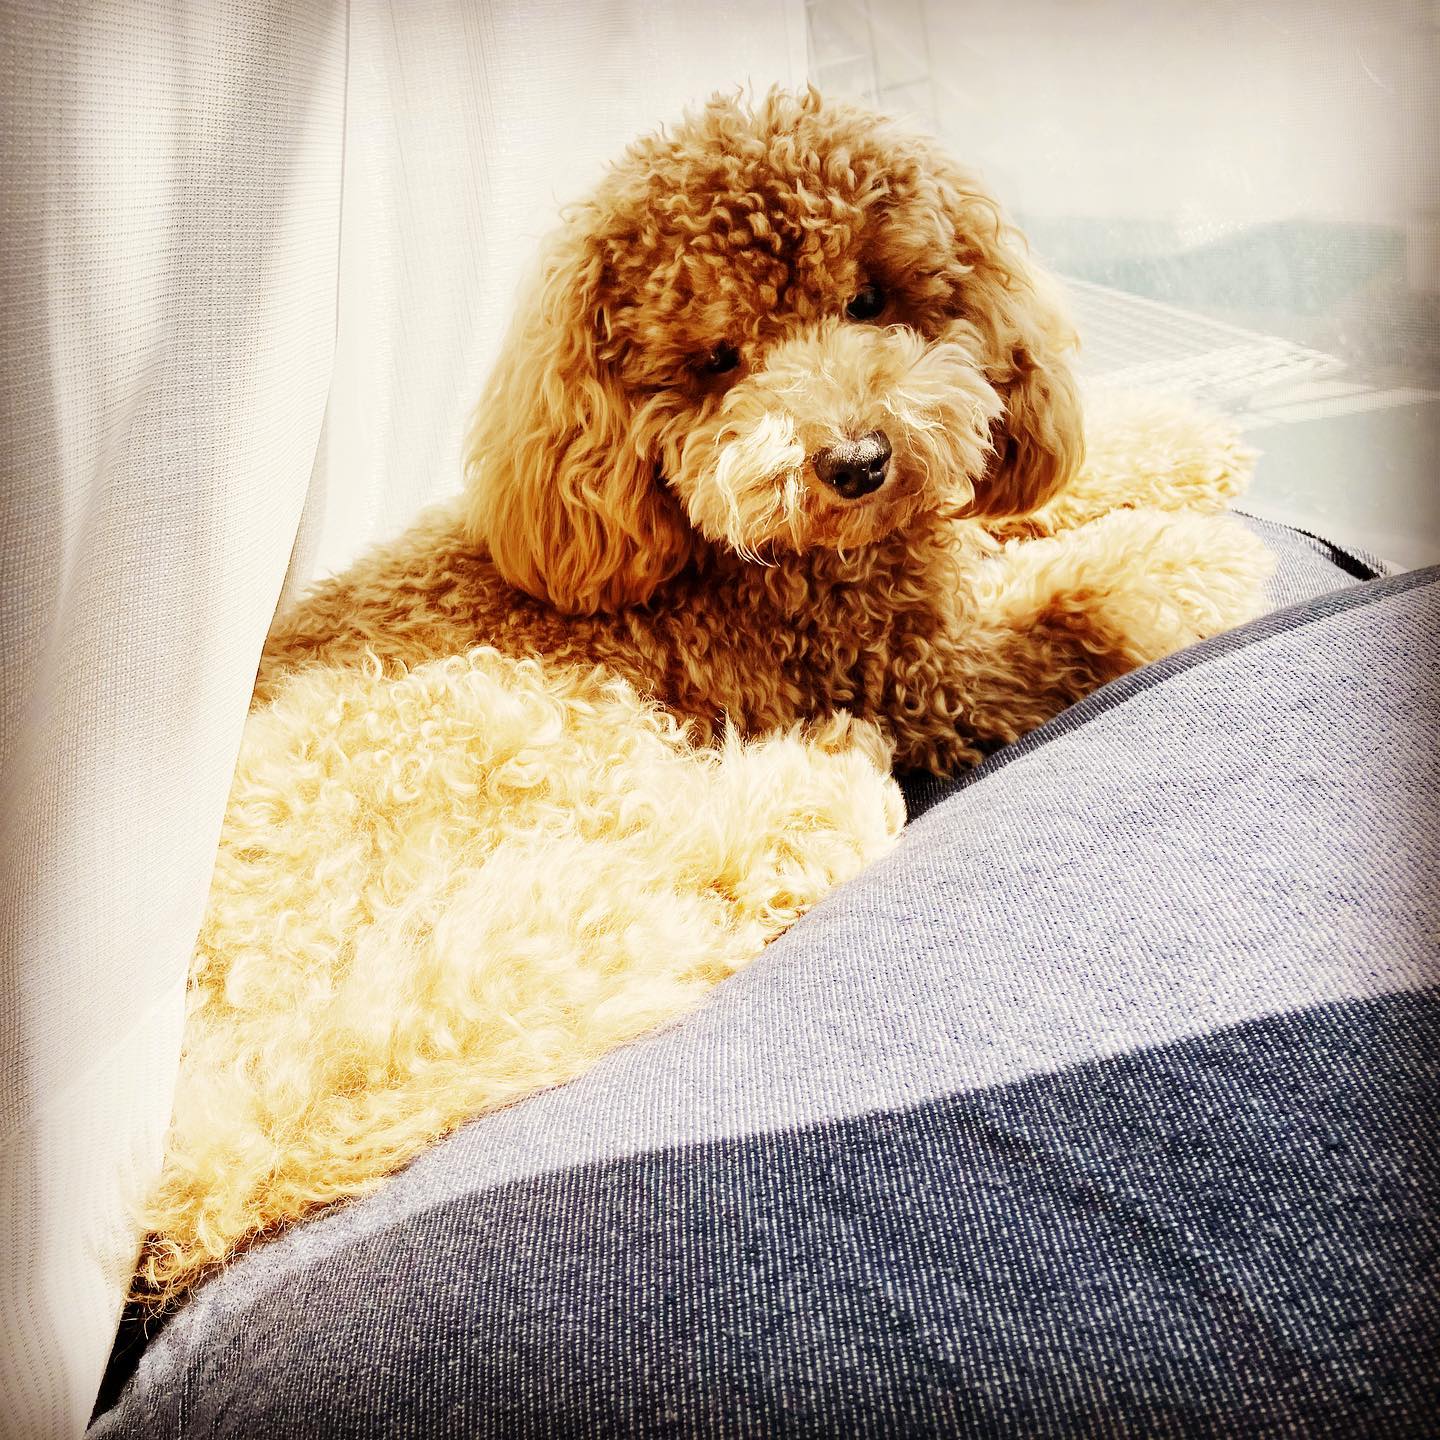 日向ぼっこ中。シナモンもジンジャーと同じ場所が気に入ったみたい。過ごしやすいのかな。家のなかで1番陽があたる特等席だし。#トイプードル #トイプードル男の子 #トイプードルのいる暮らし #犬のいる暮らし #日向ぼっこ犬